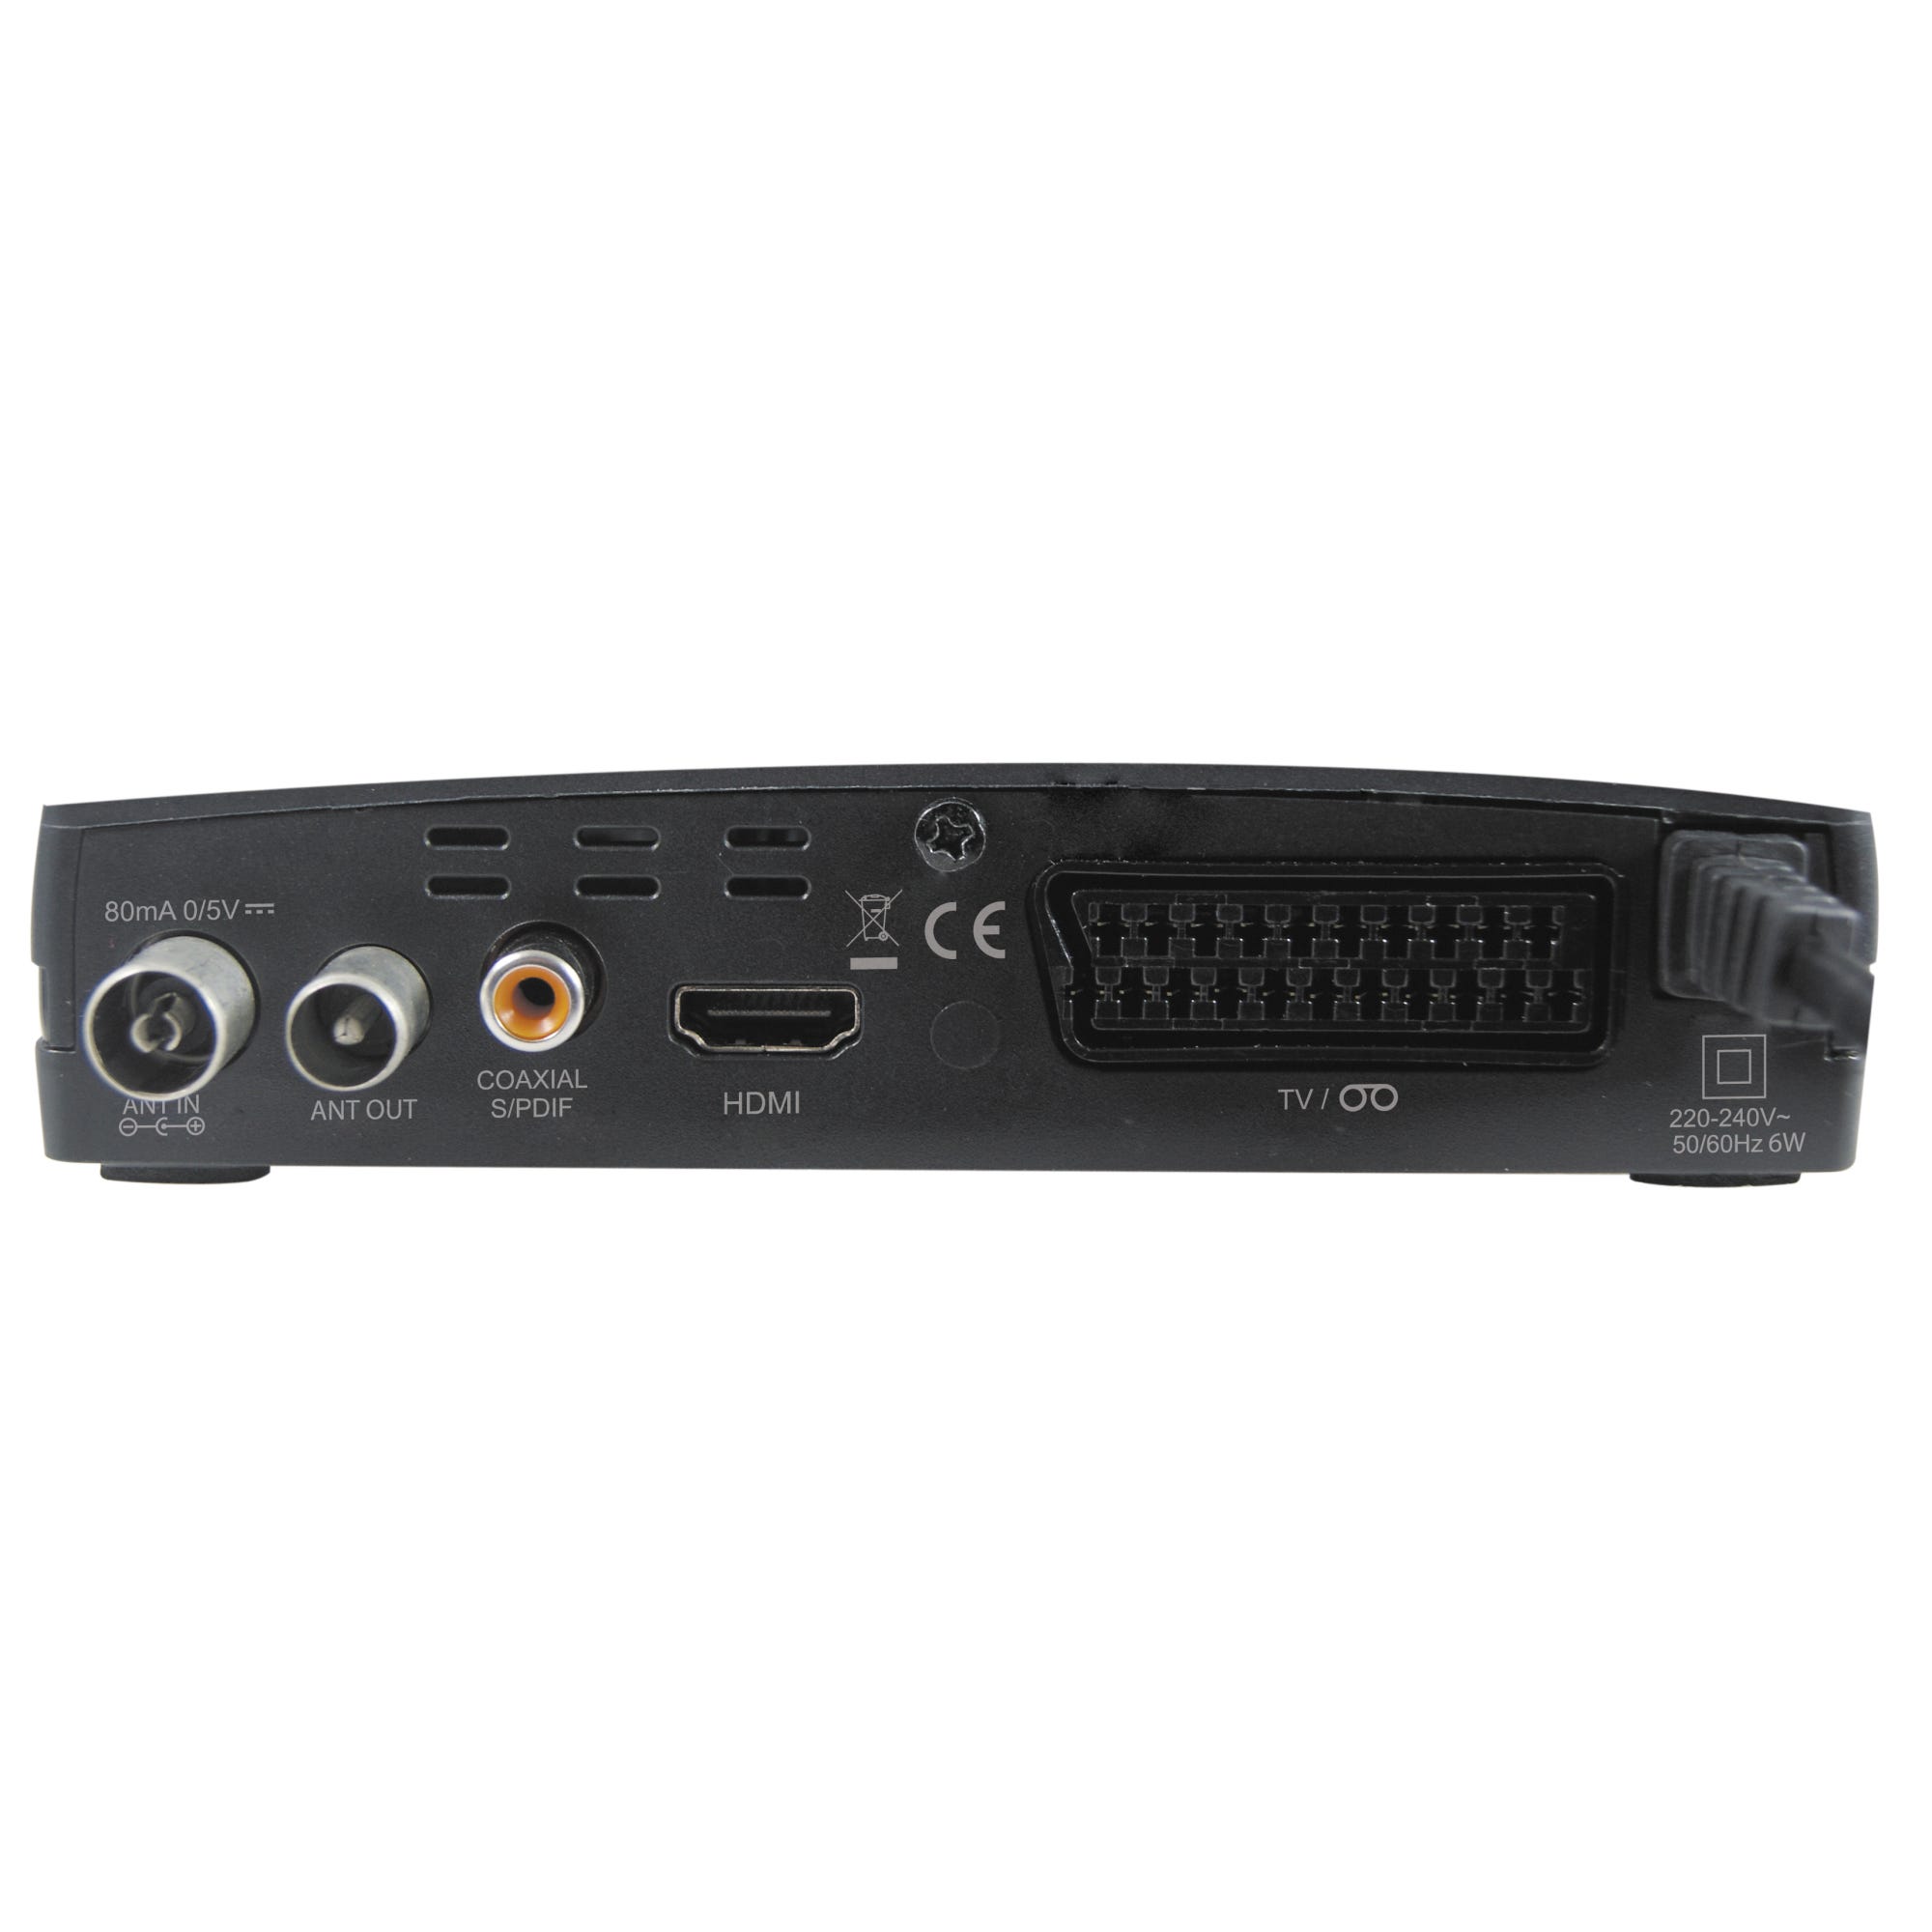 SINTONIZADOR TDT HD T2 HDMI USB GRABADOR